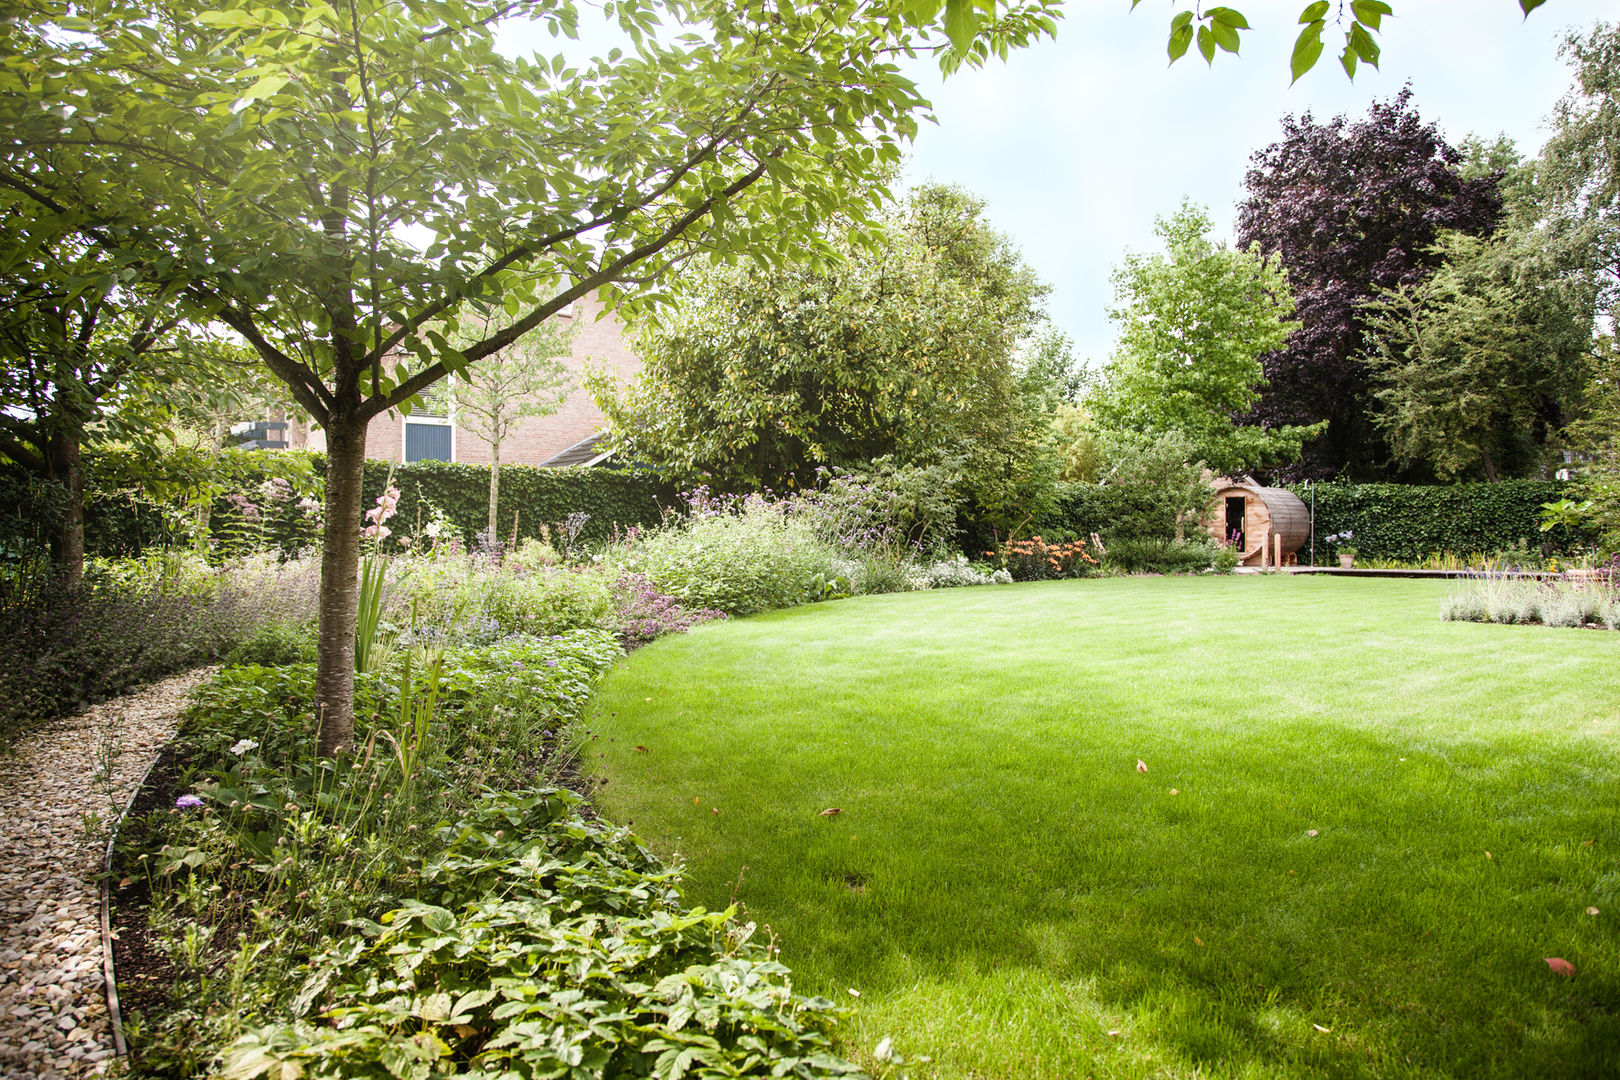 Wellness tuin verbonden met het landschap, Studio REDD exclusieve tuinen Studio REDD exclusieve tuinen Wiejski ogród